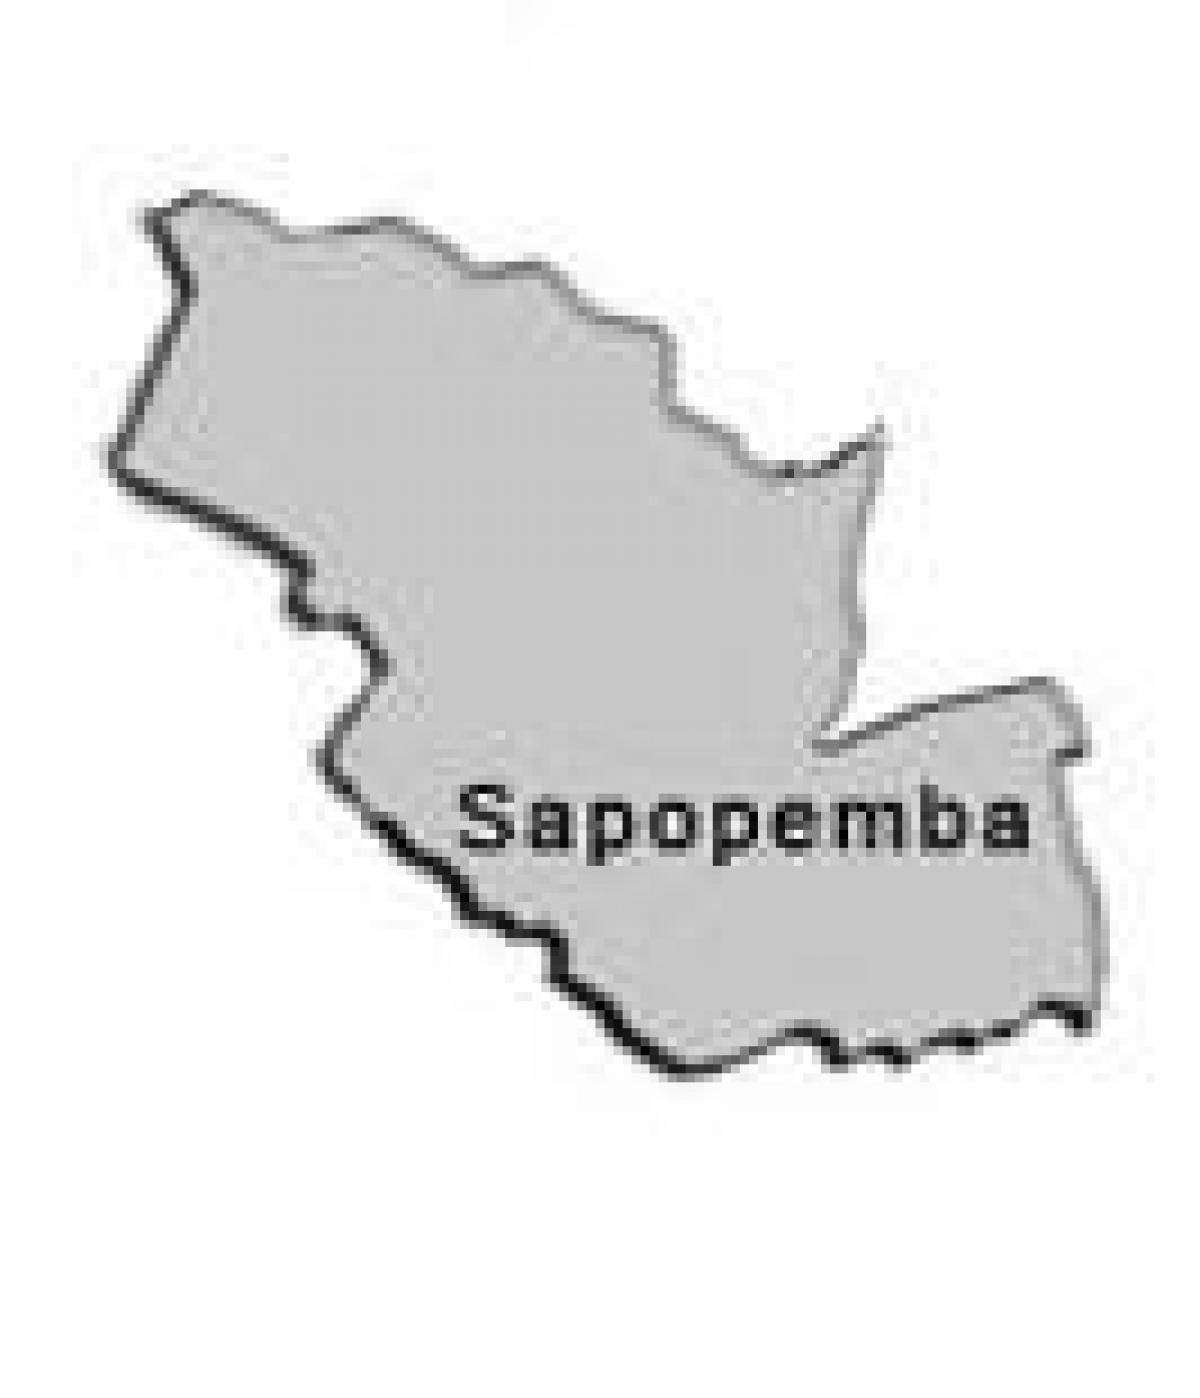 નકશો Sapopembra પેટા-પ્રીફેકચર